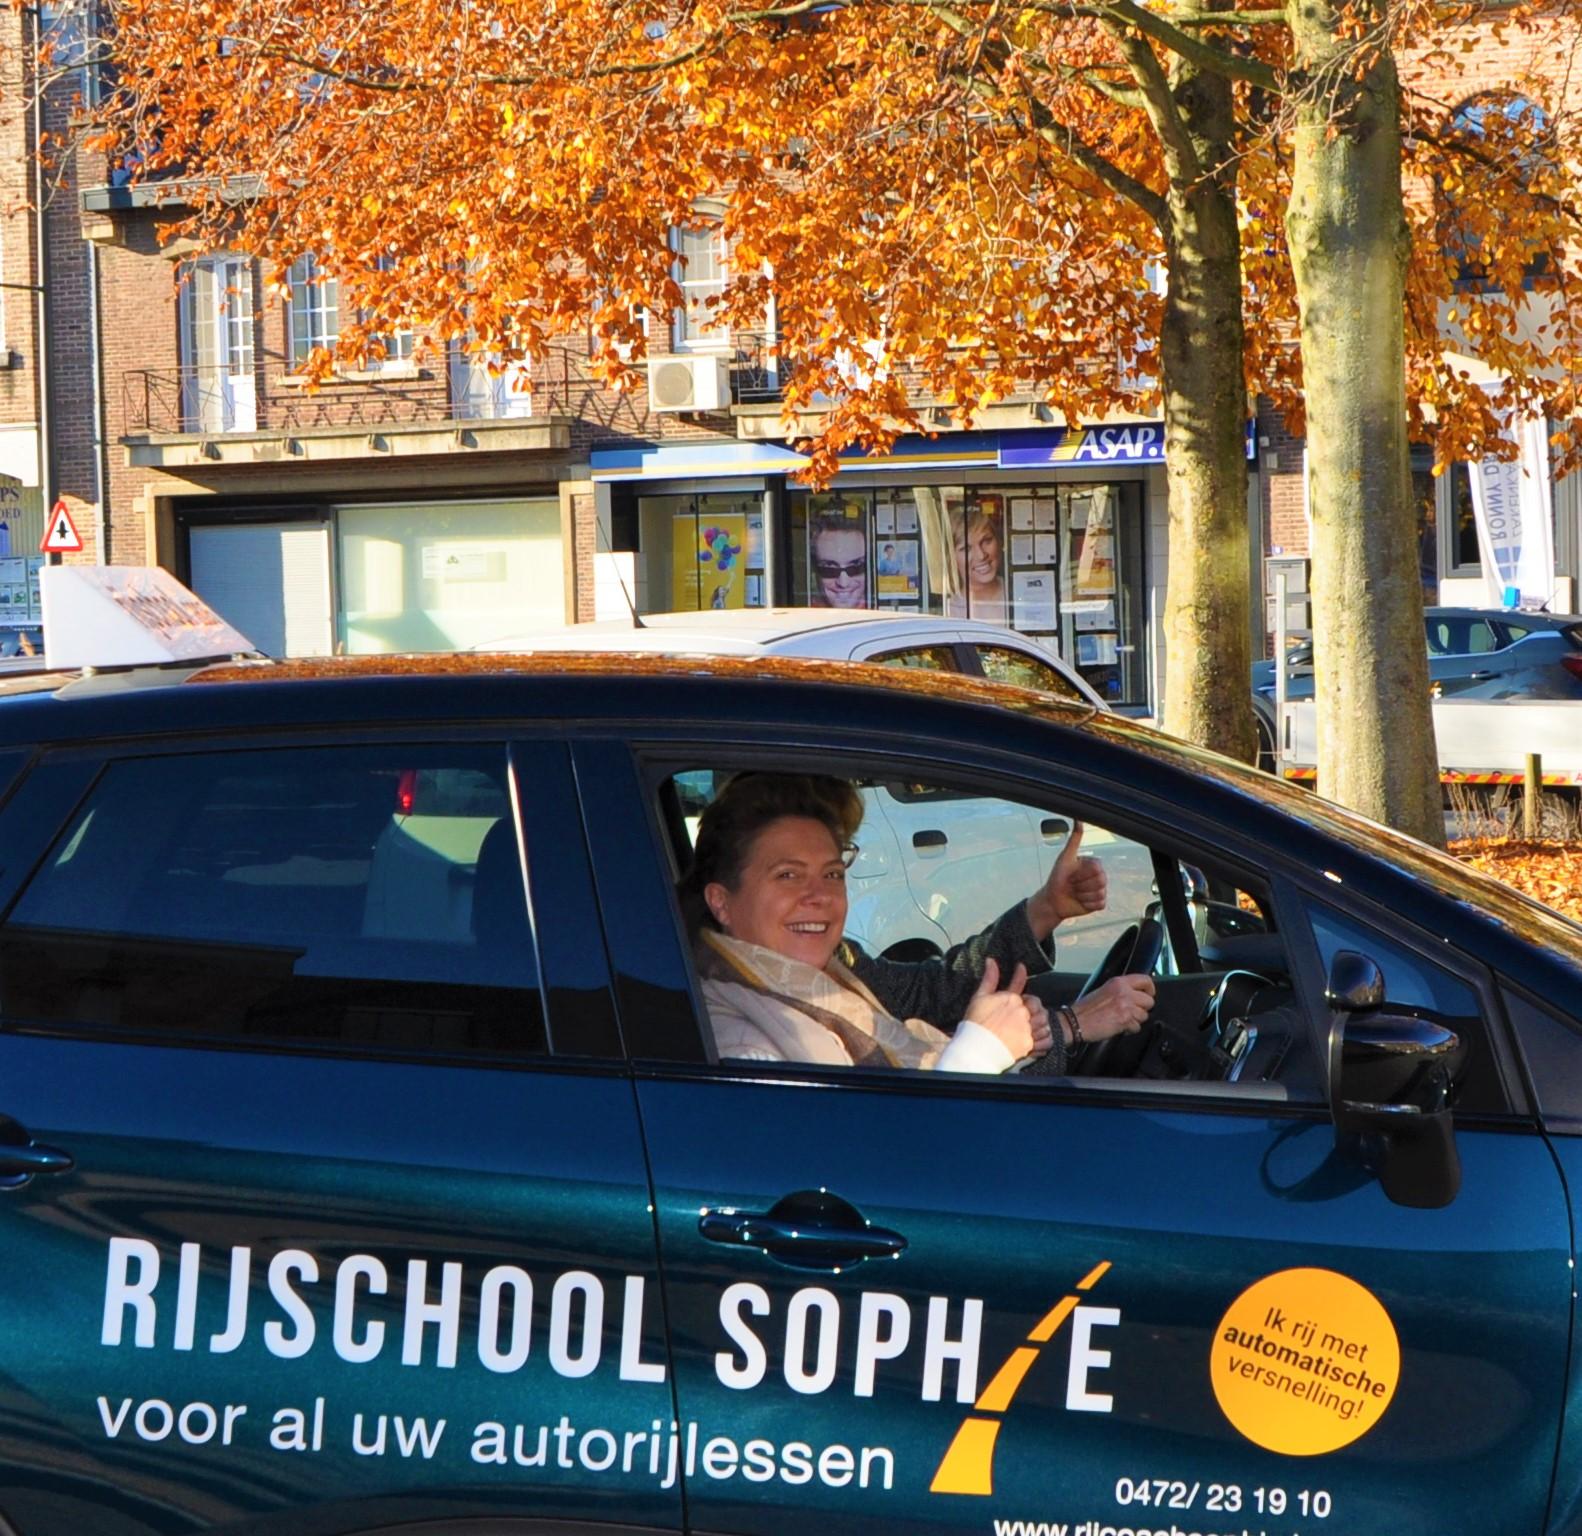 Rijschool Sophie in Limburg is jouw partner voor kwalitatieve rijlessen zowel voor jouw theoretisch als jouw praktijk examen 